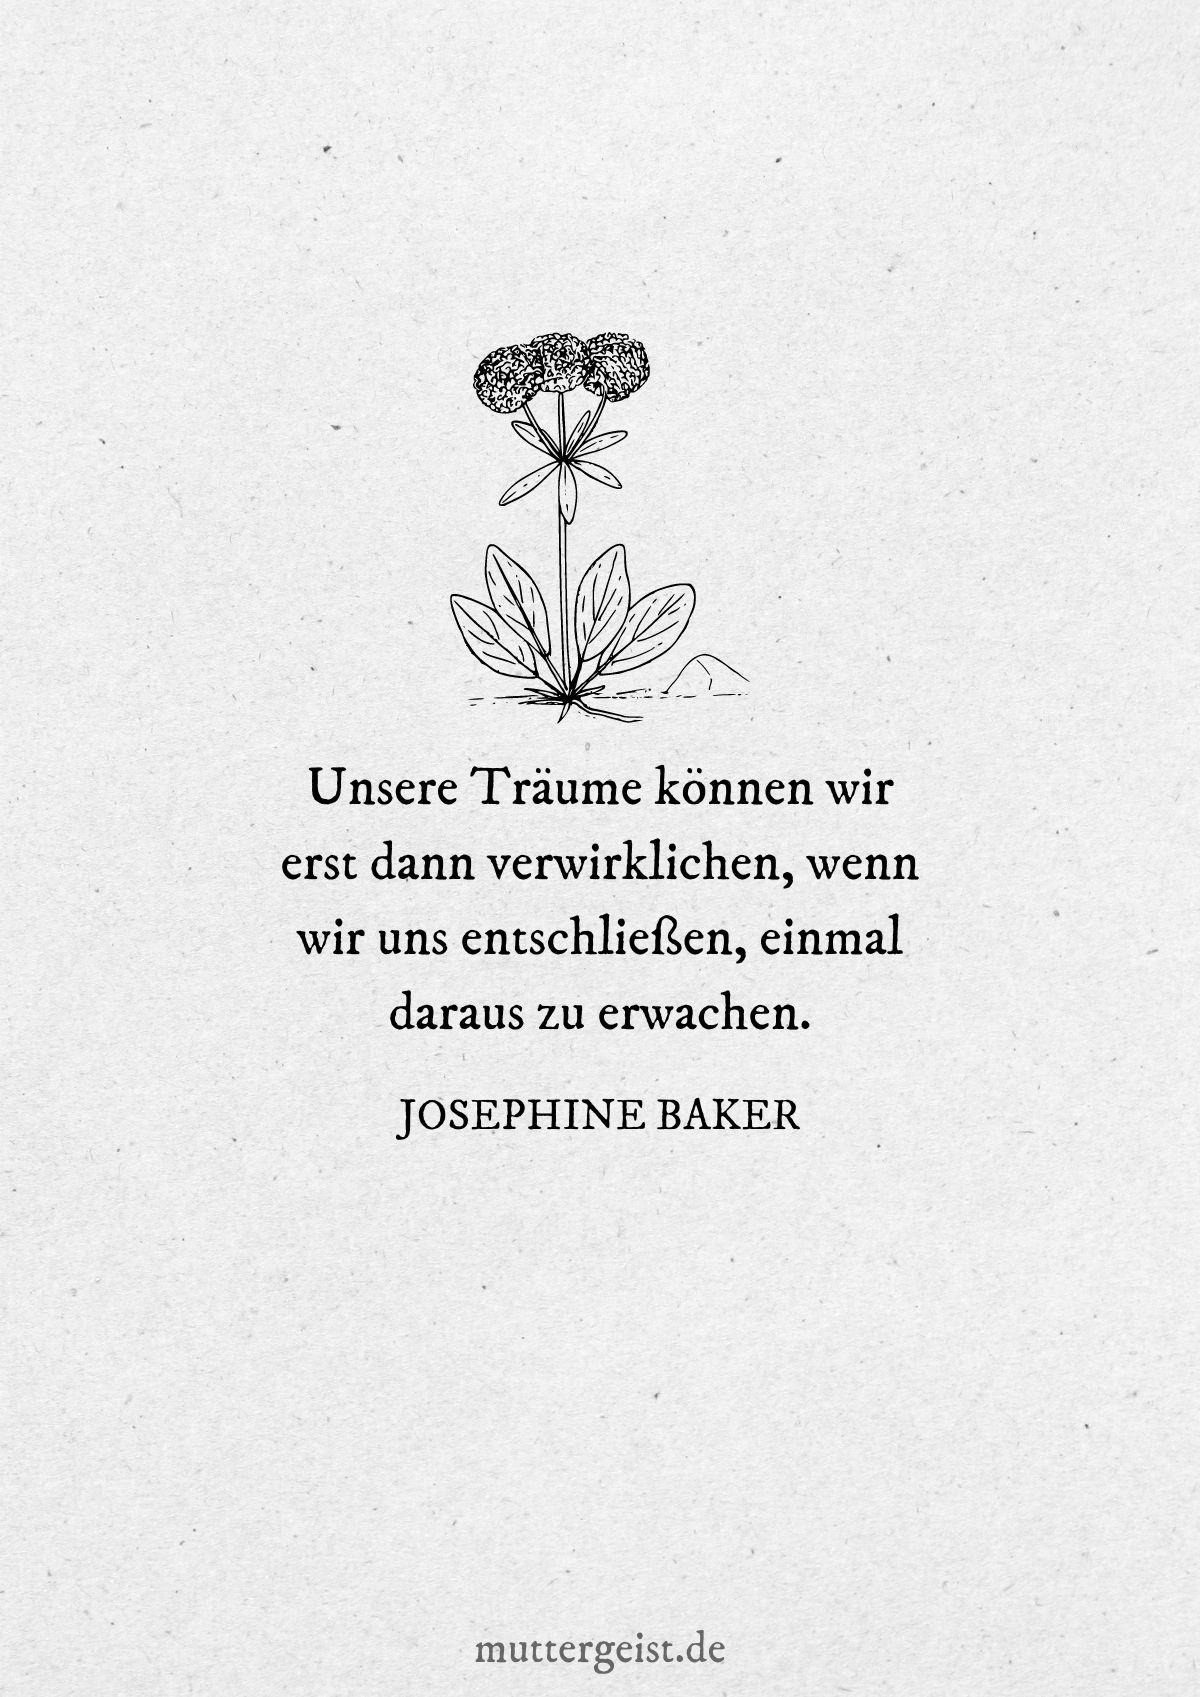 Zitat von Josephine Baker über die Verwirklichung Ihrer Träume